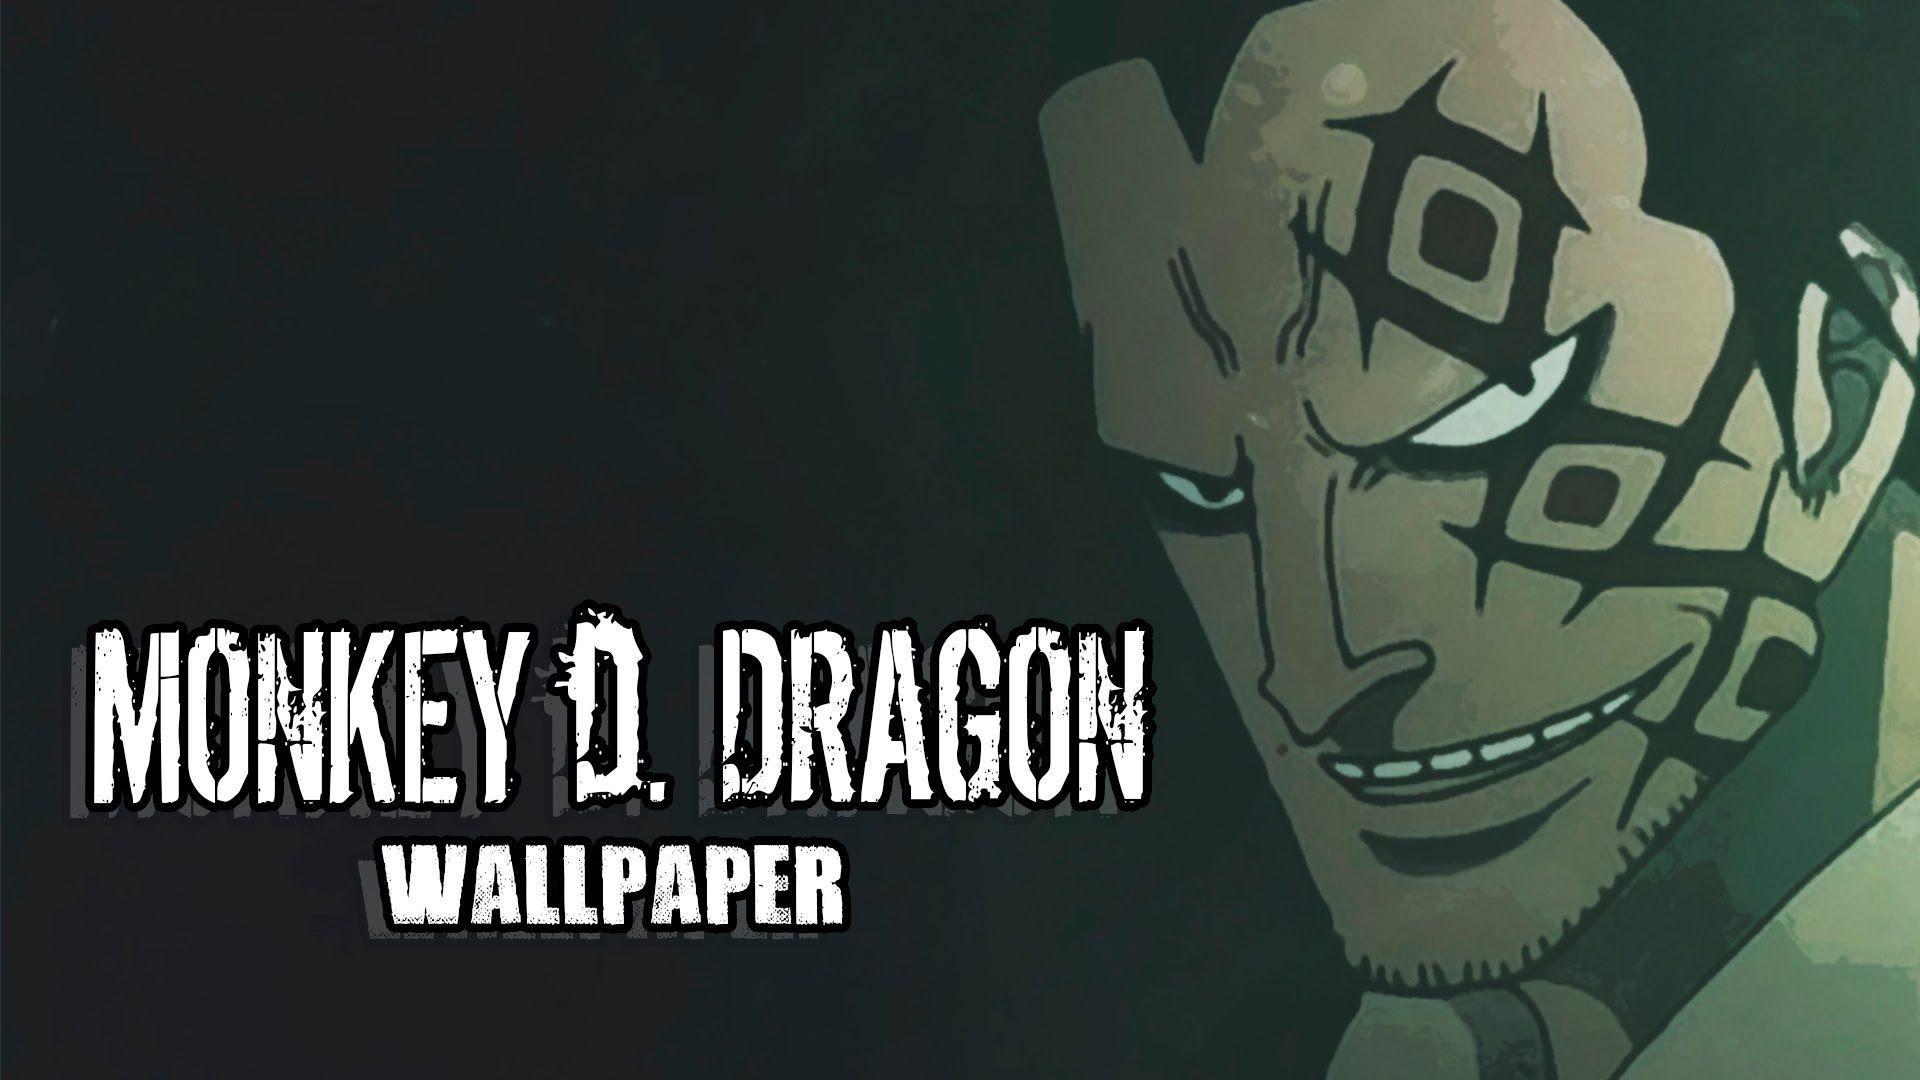 100+] Monkey D Dragon Wallpapers